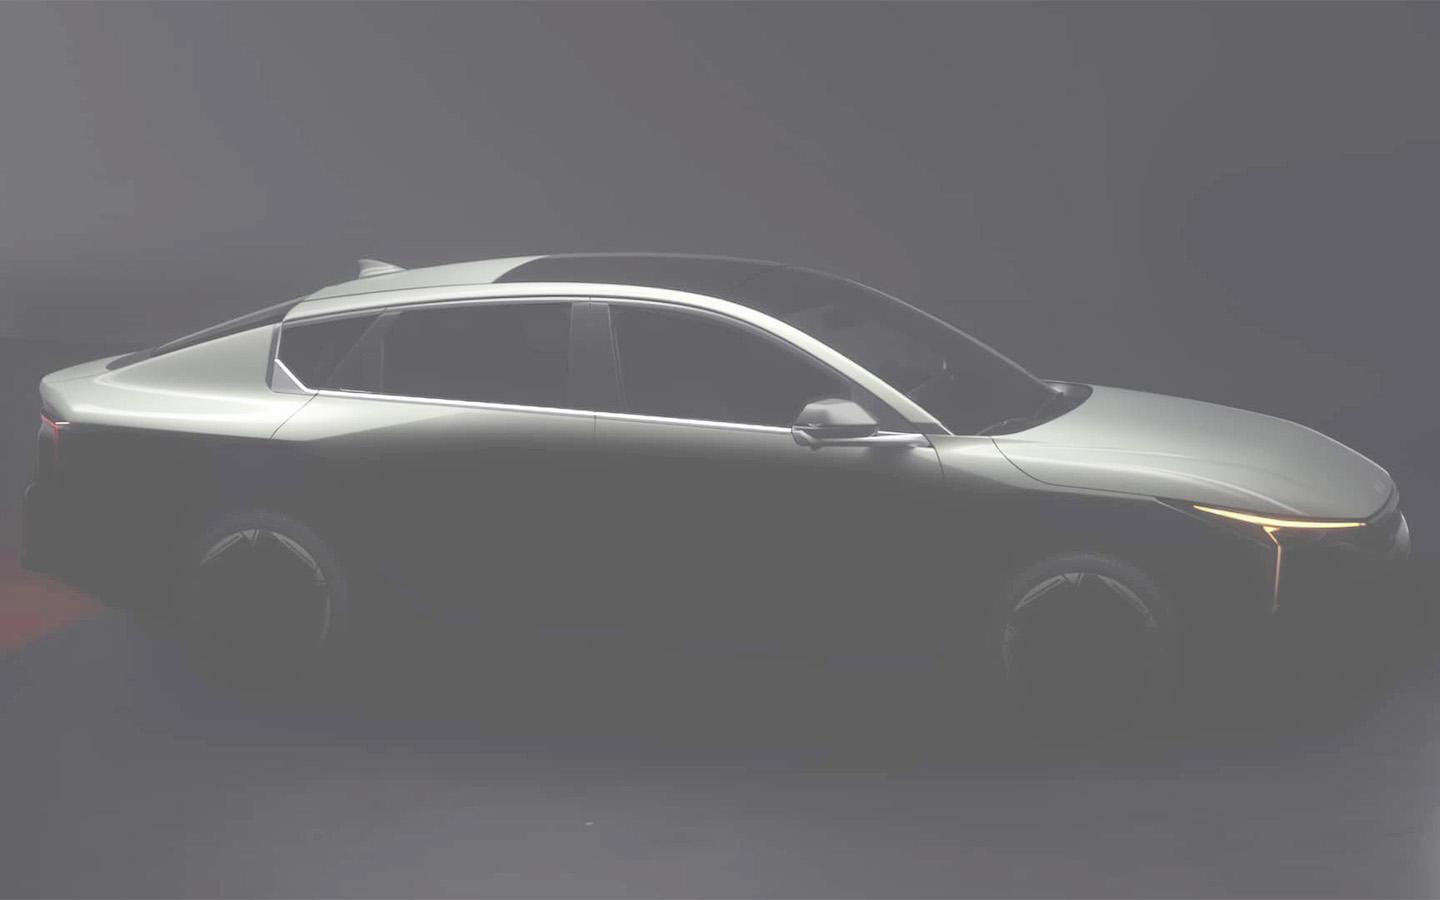 Kia анонсировала премьеру нового седана K4. Первое изображение